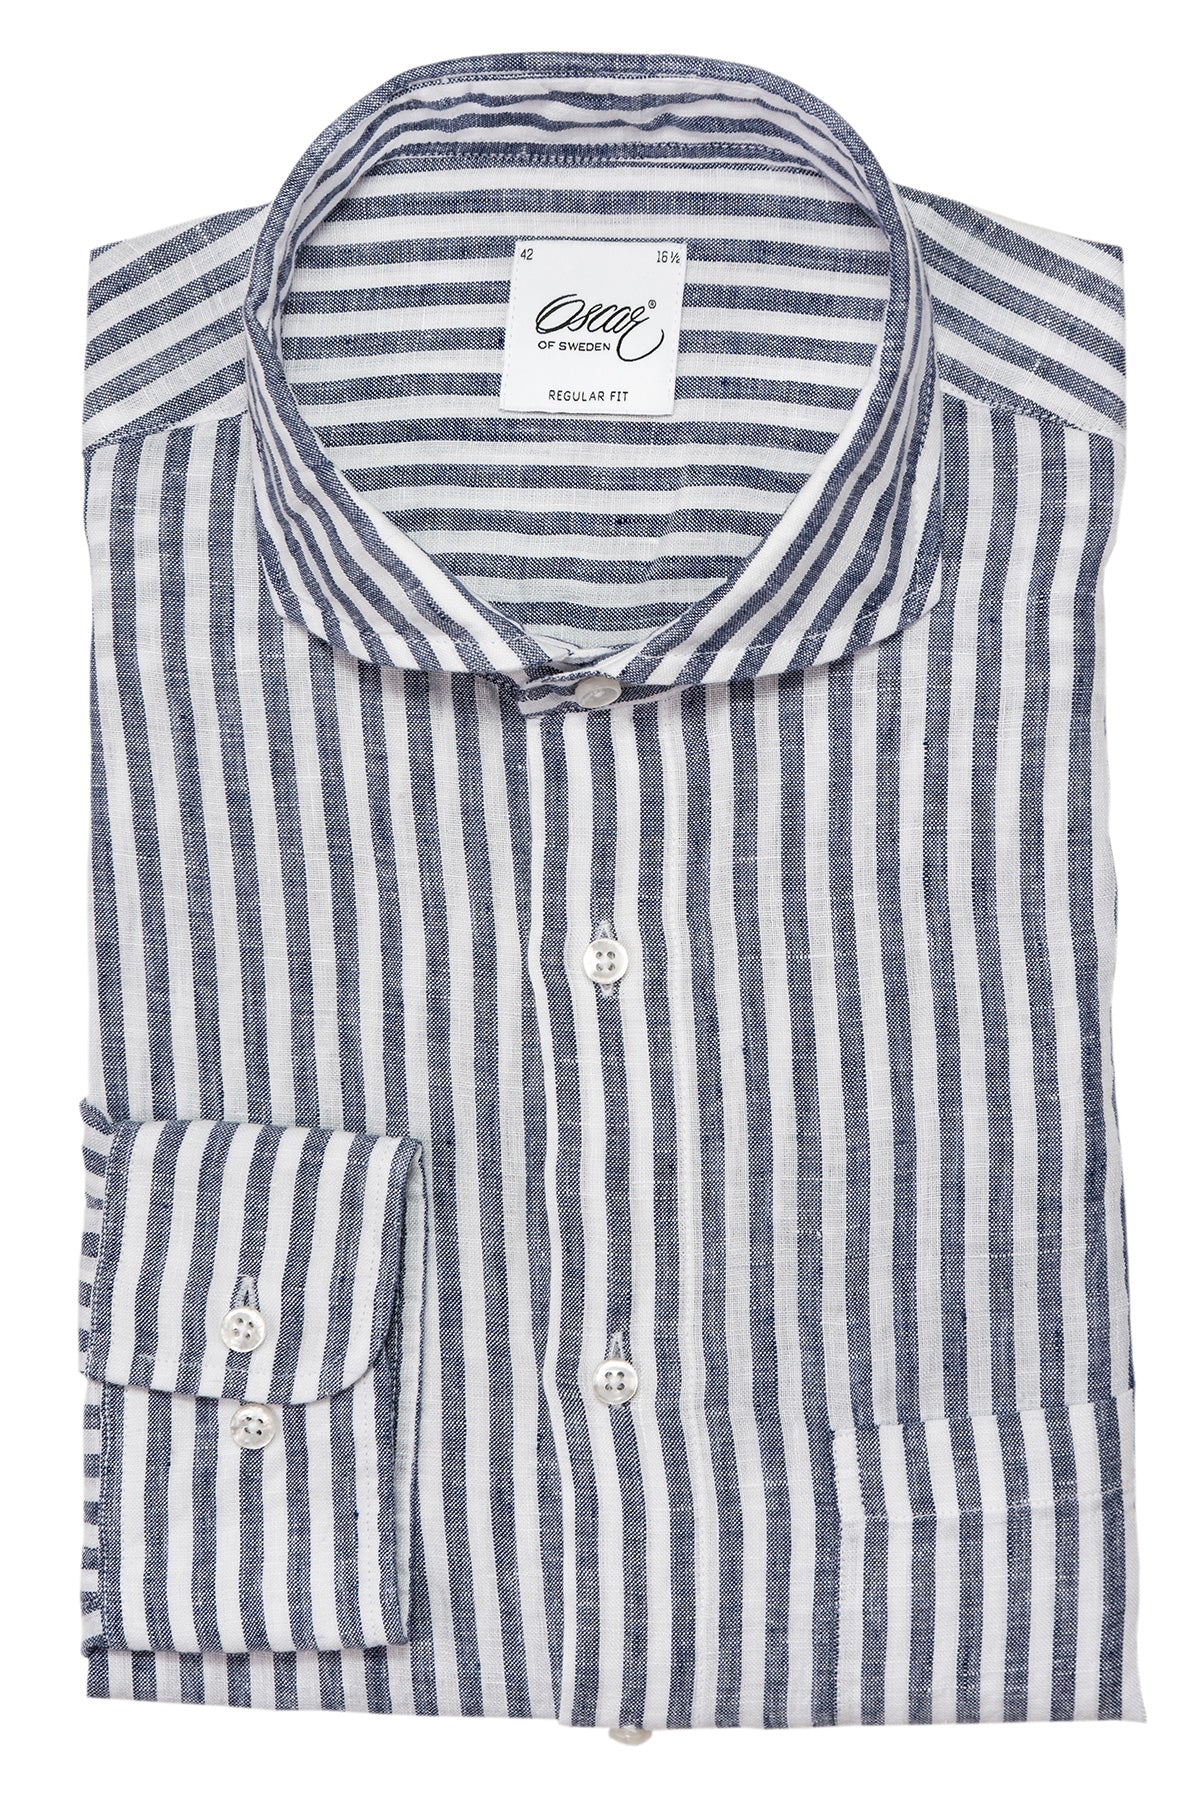 Blue striped linen regular fit shirt